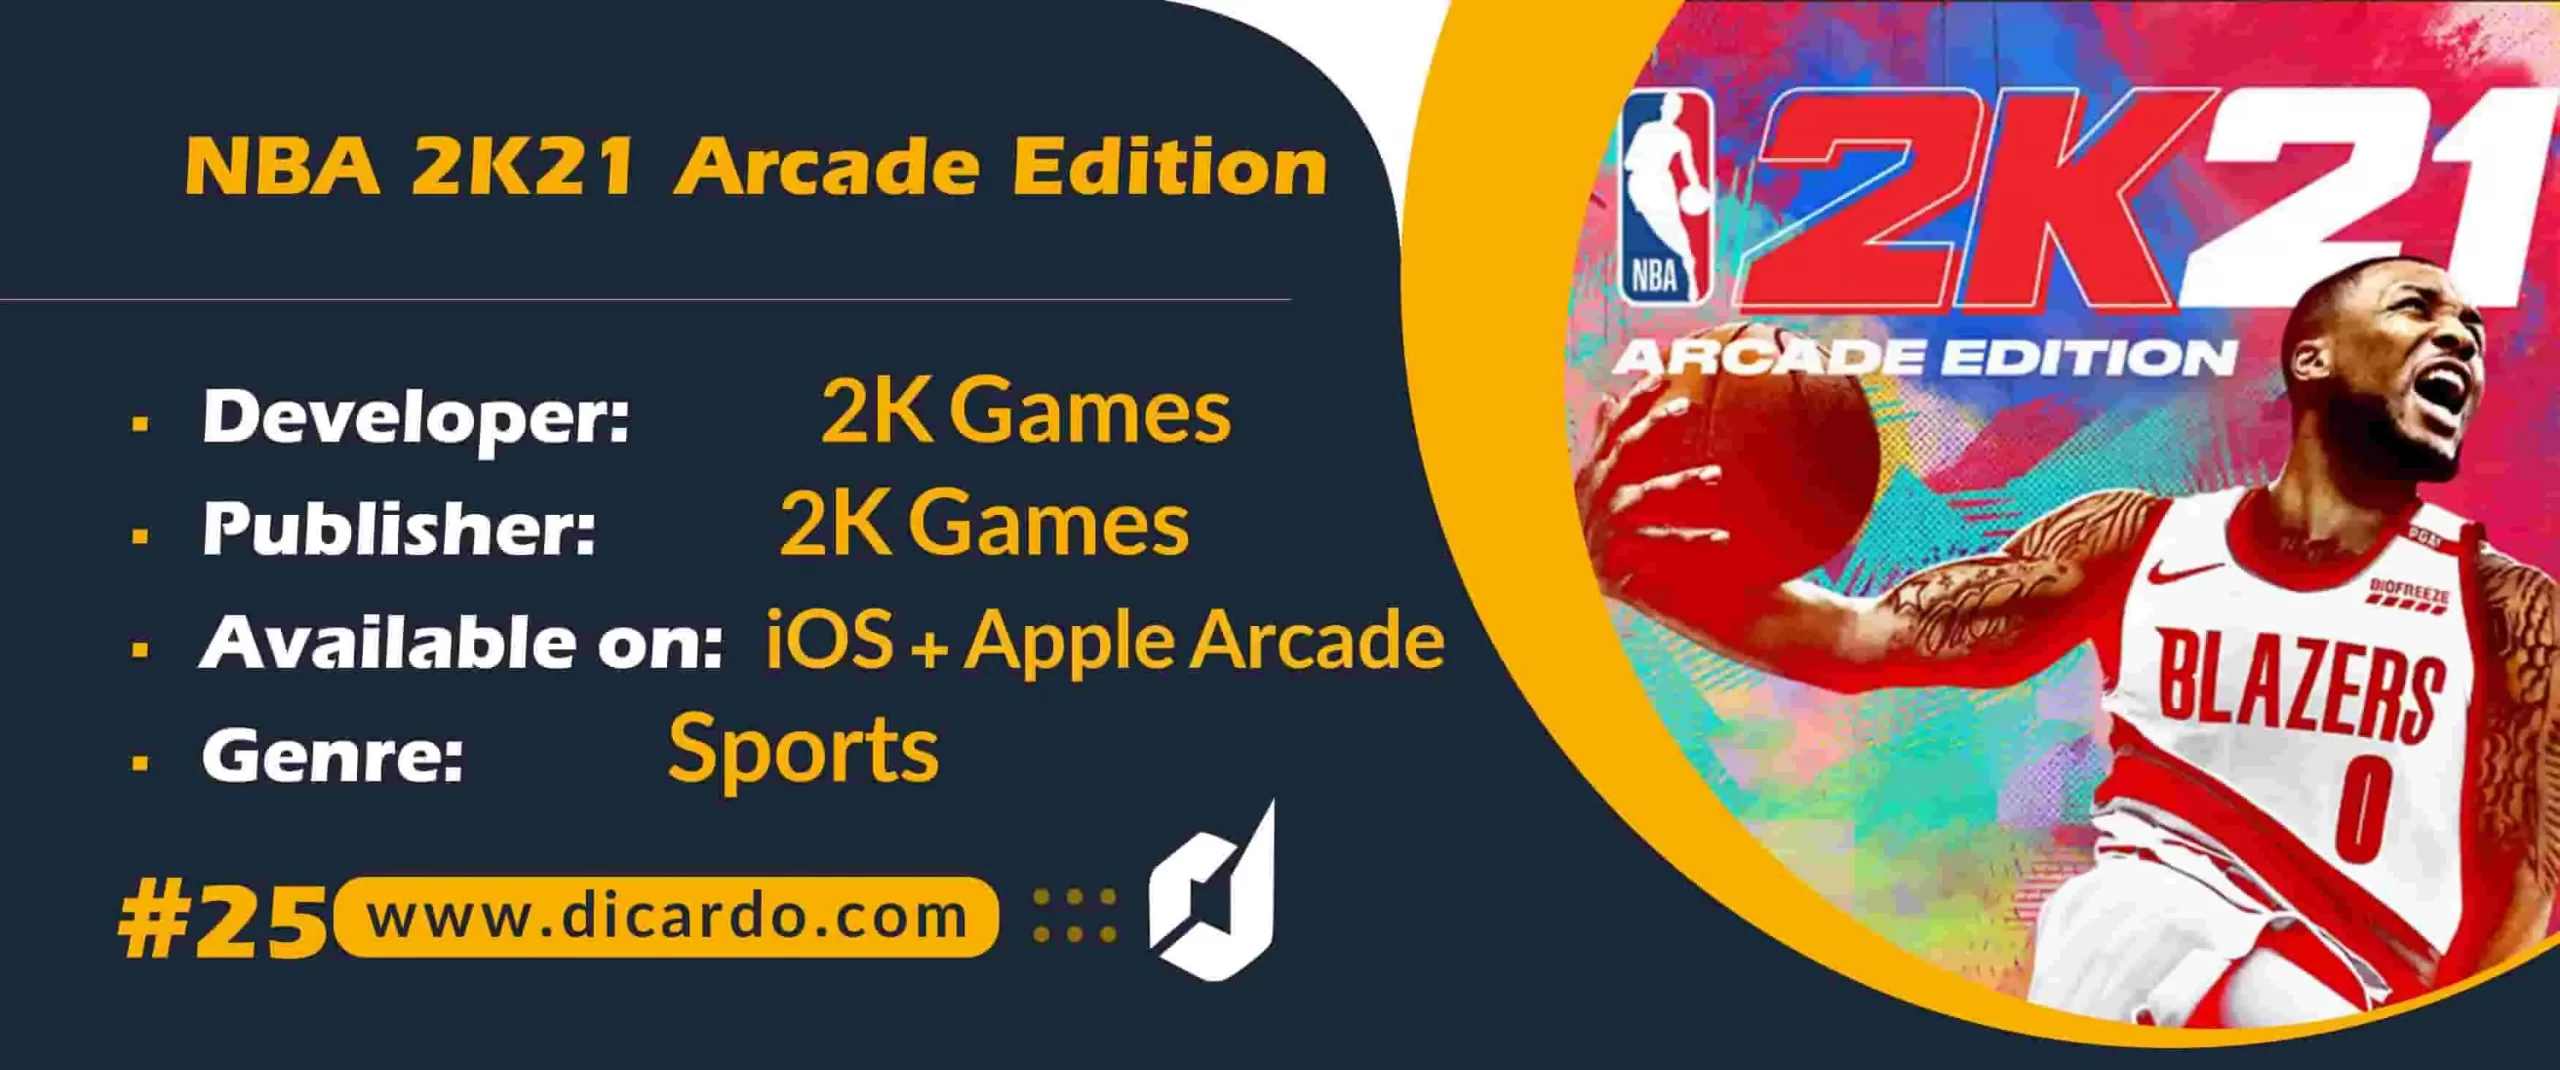 #25 آرکید ادیشن NBA 2K21 Arcade Edition